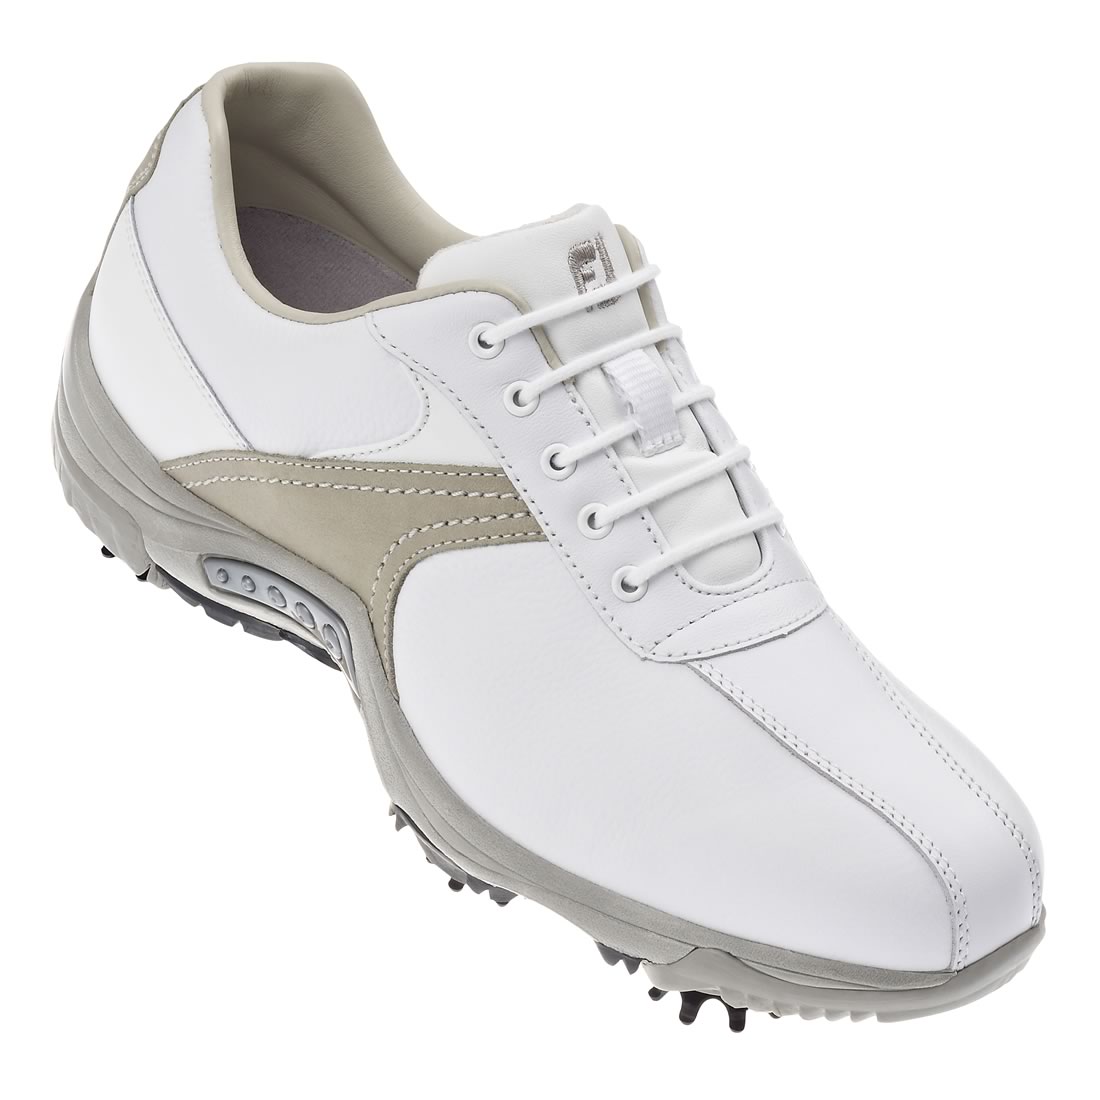 Ladies Contour Golf Shoes White/Drift